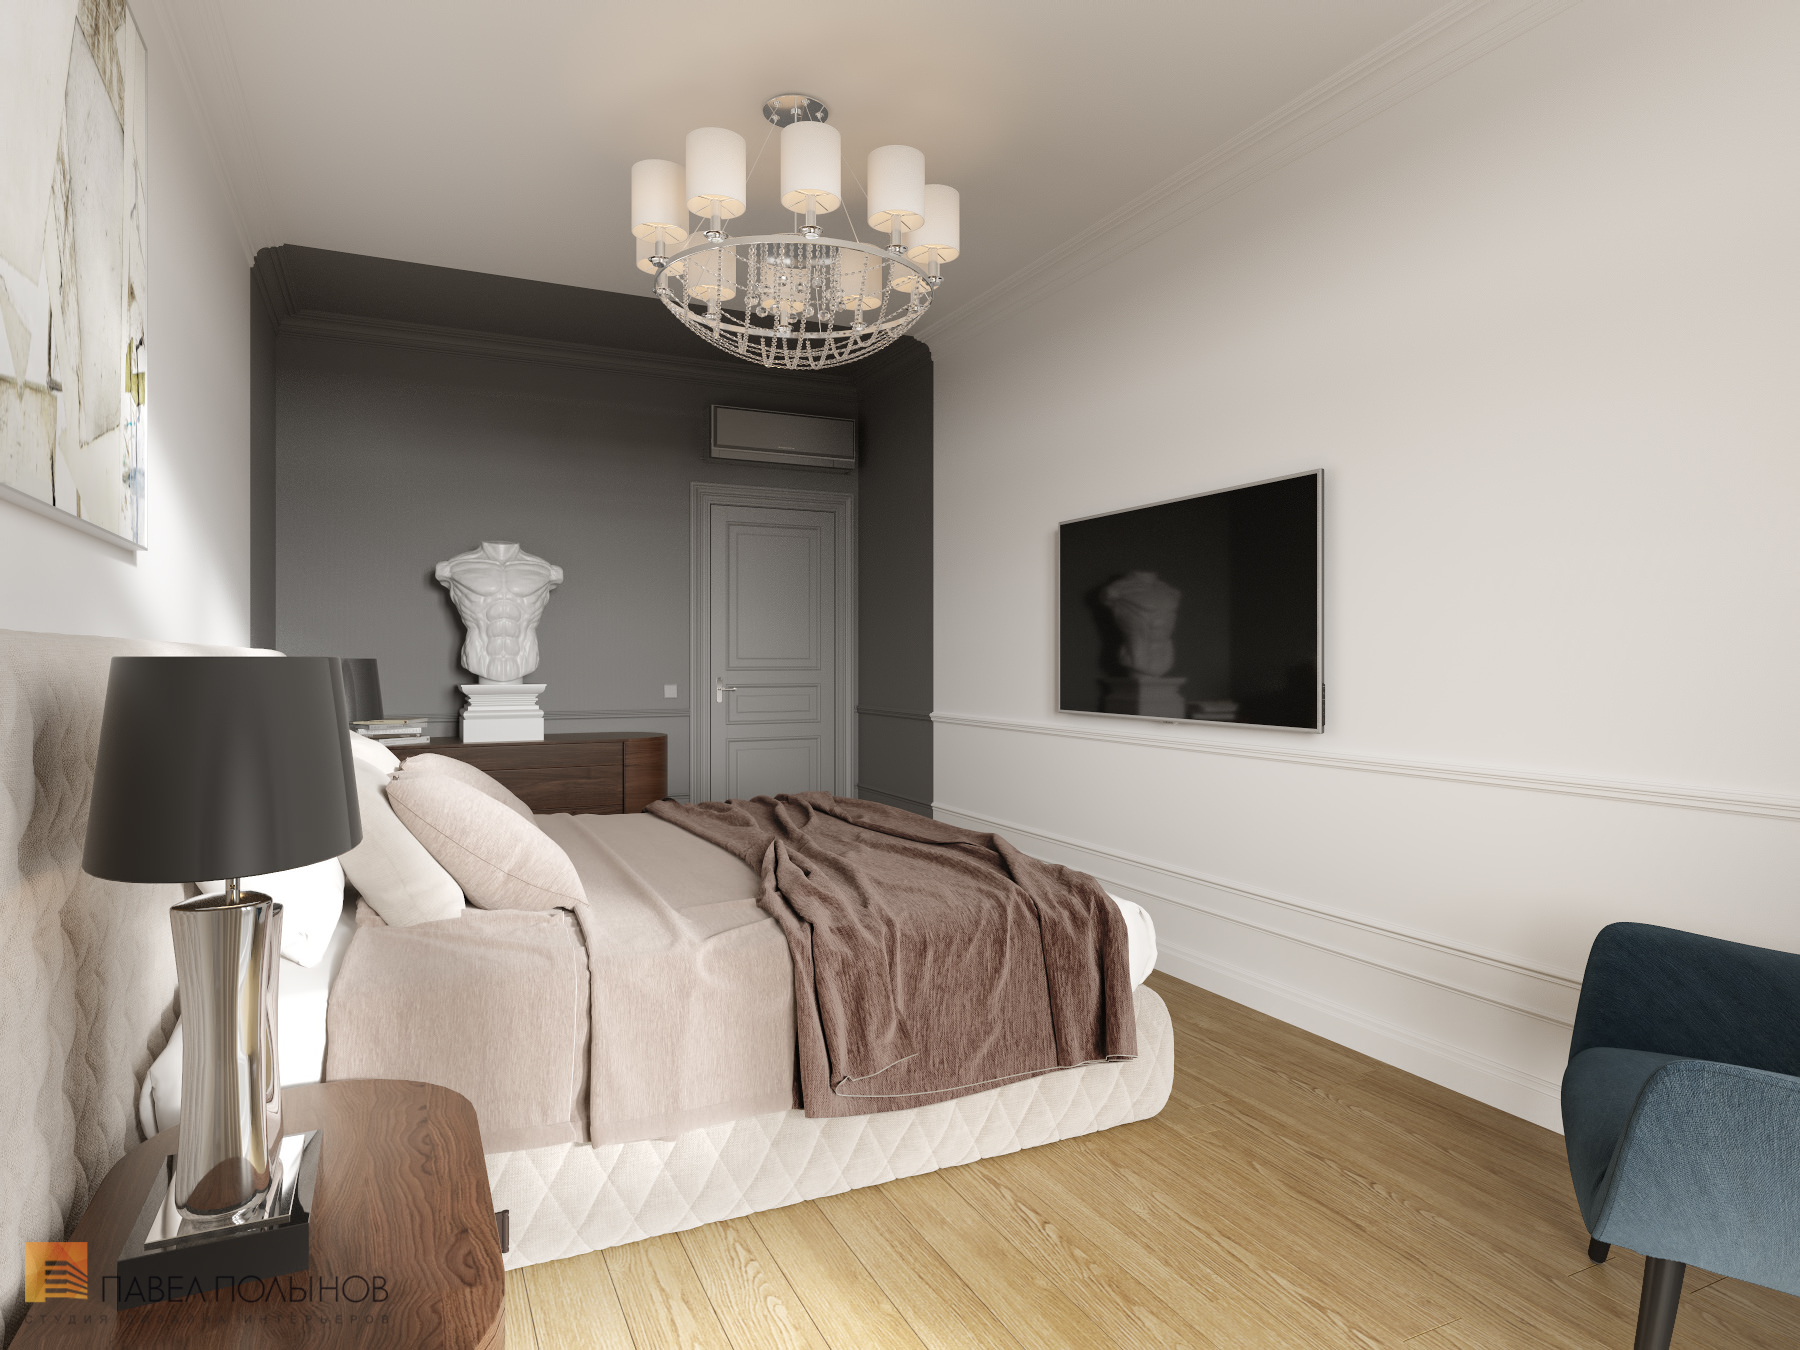 Фото дизайн интерьера спальни из проекта «Интерьер квартиры в стиле неоклассики, ЖК «Парадный квартал», 190 кв.м.»